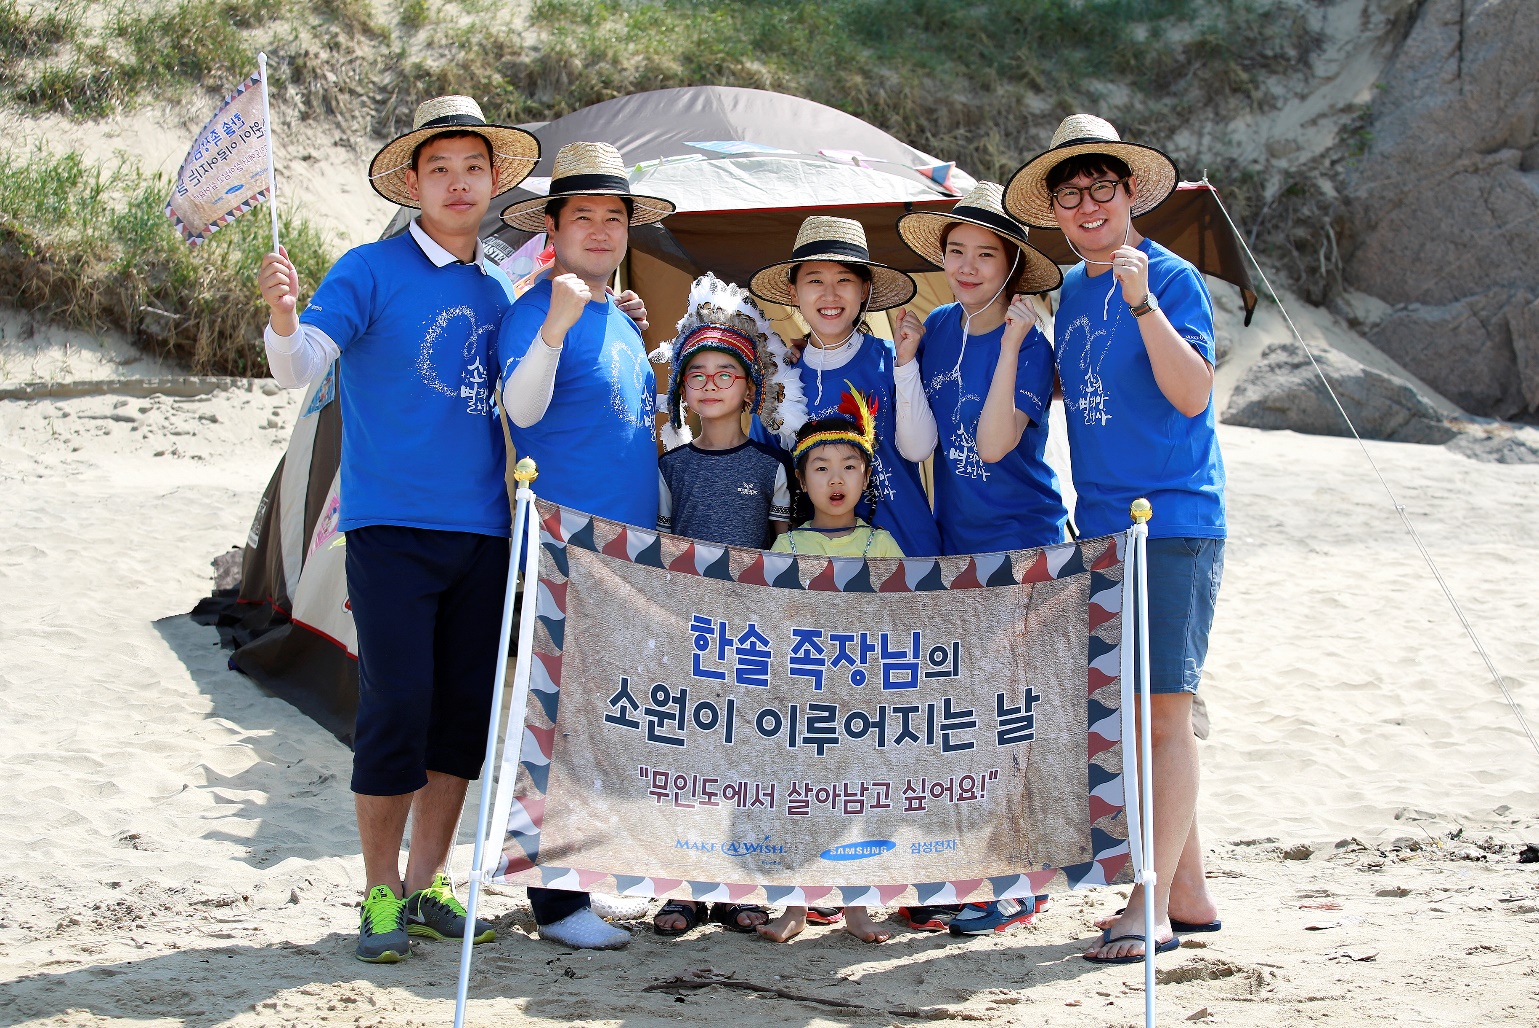 버킷림프종 8살 아동, 난치병 아동 소원성취 기관 한국메이크어위시재단에 사연 신청